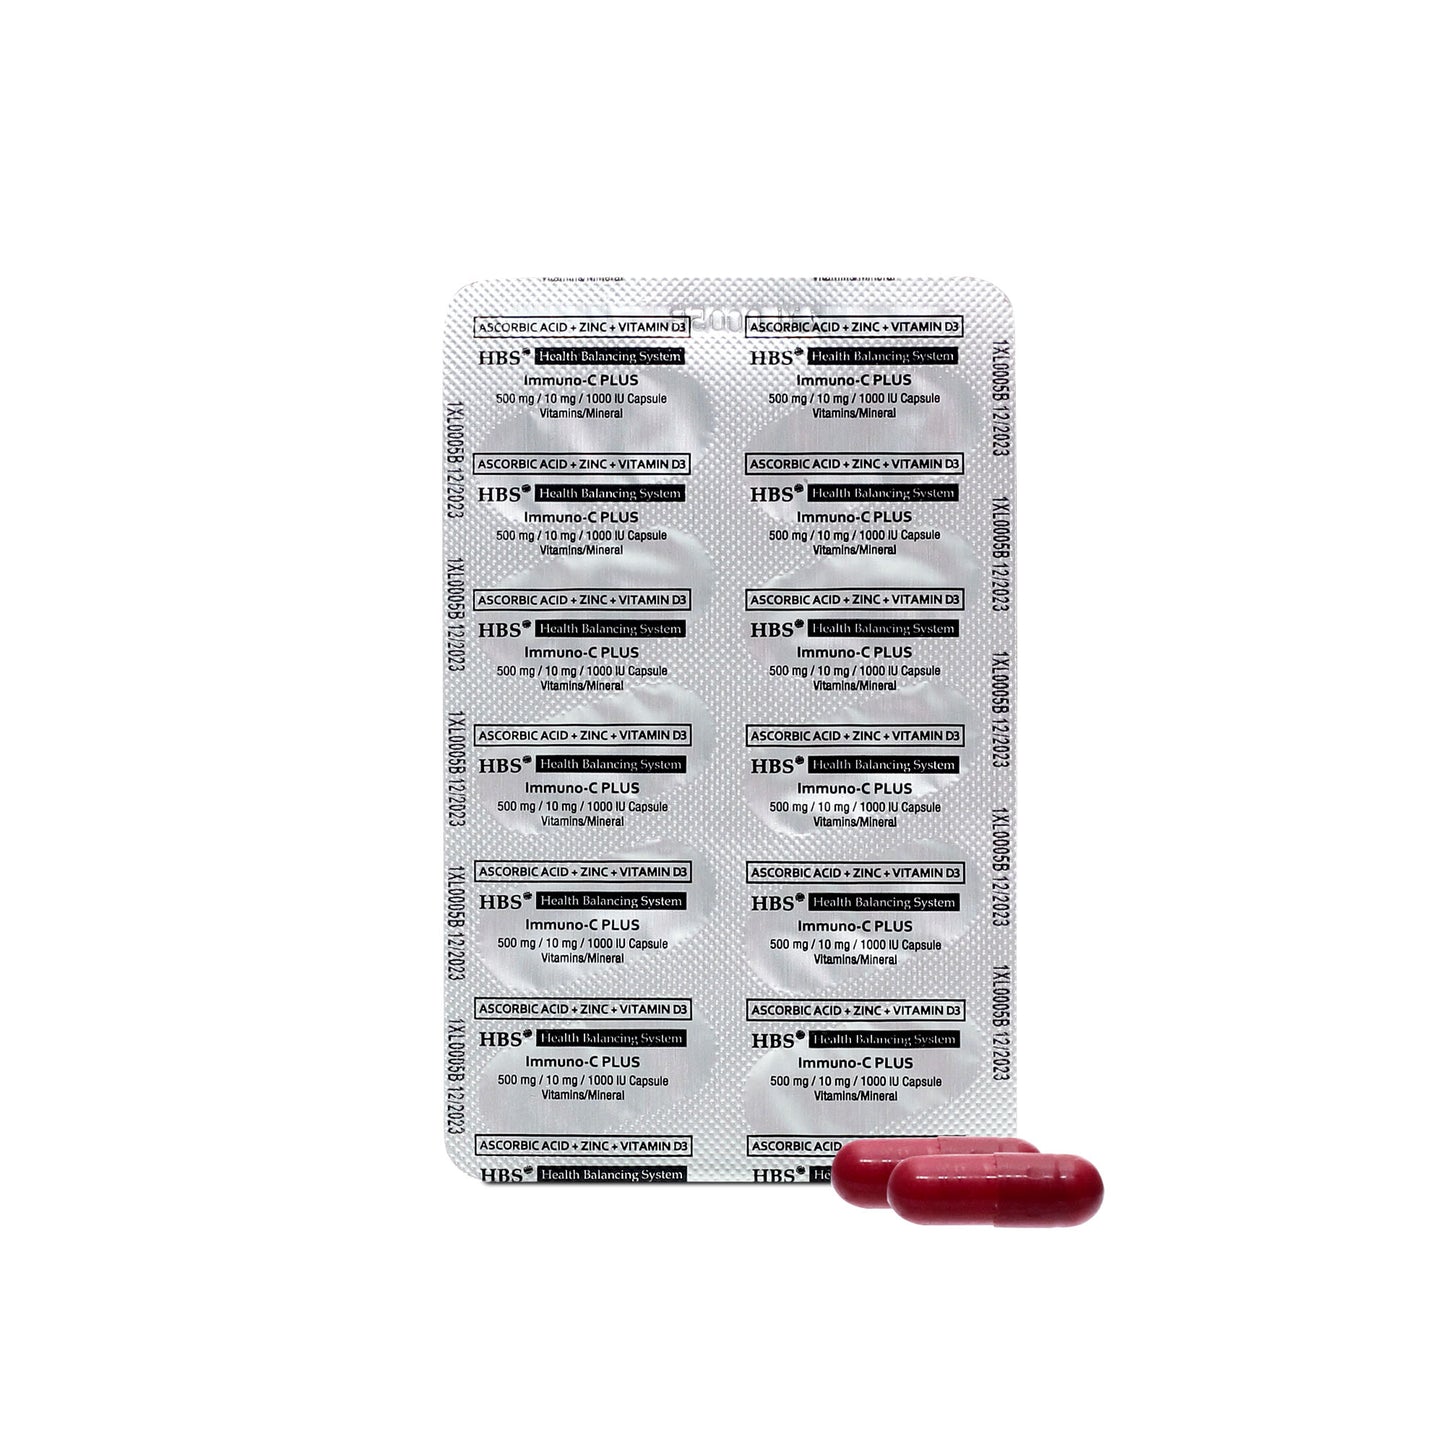 HBS Immuno-C PLUS 500mg (60 capsules)